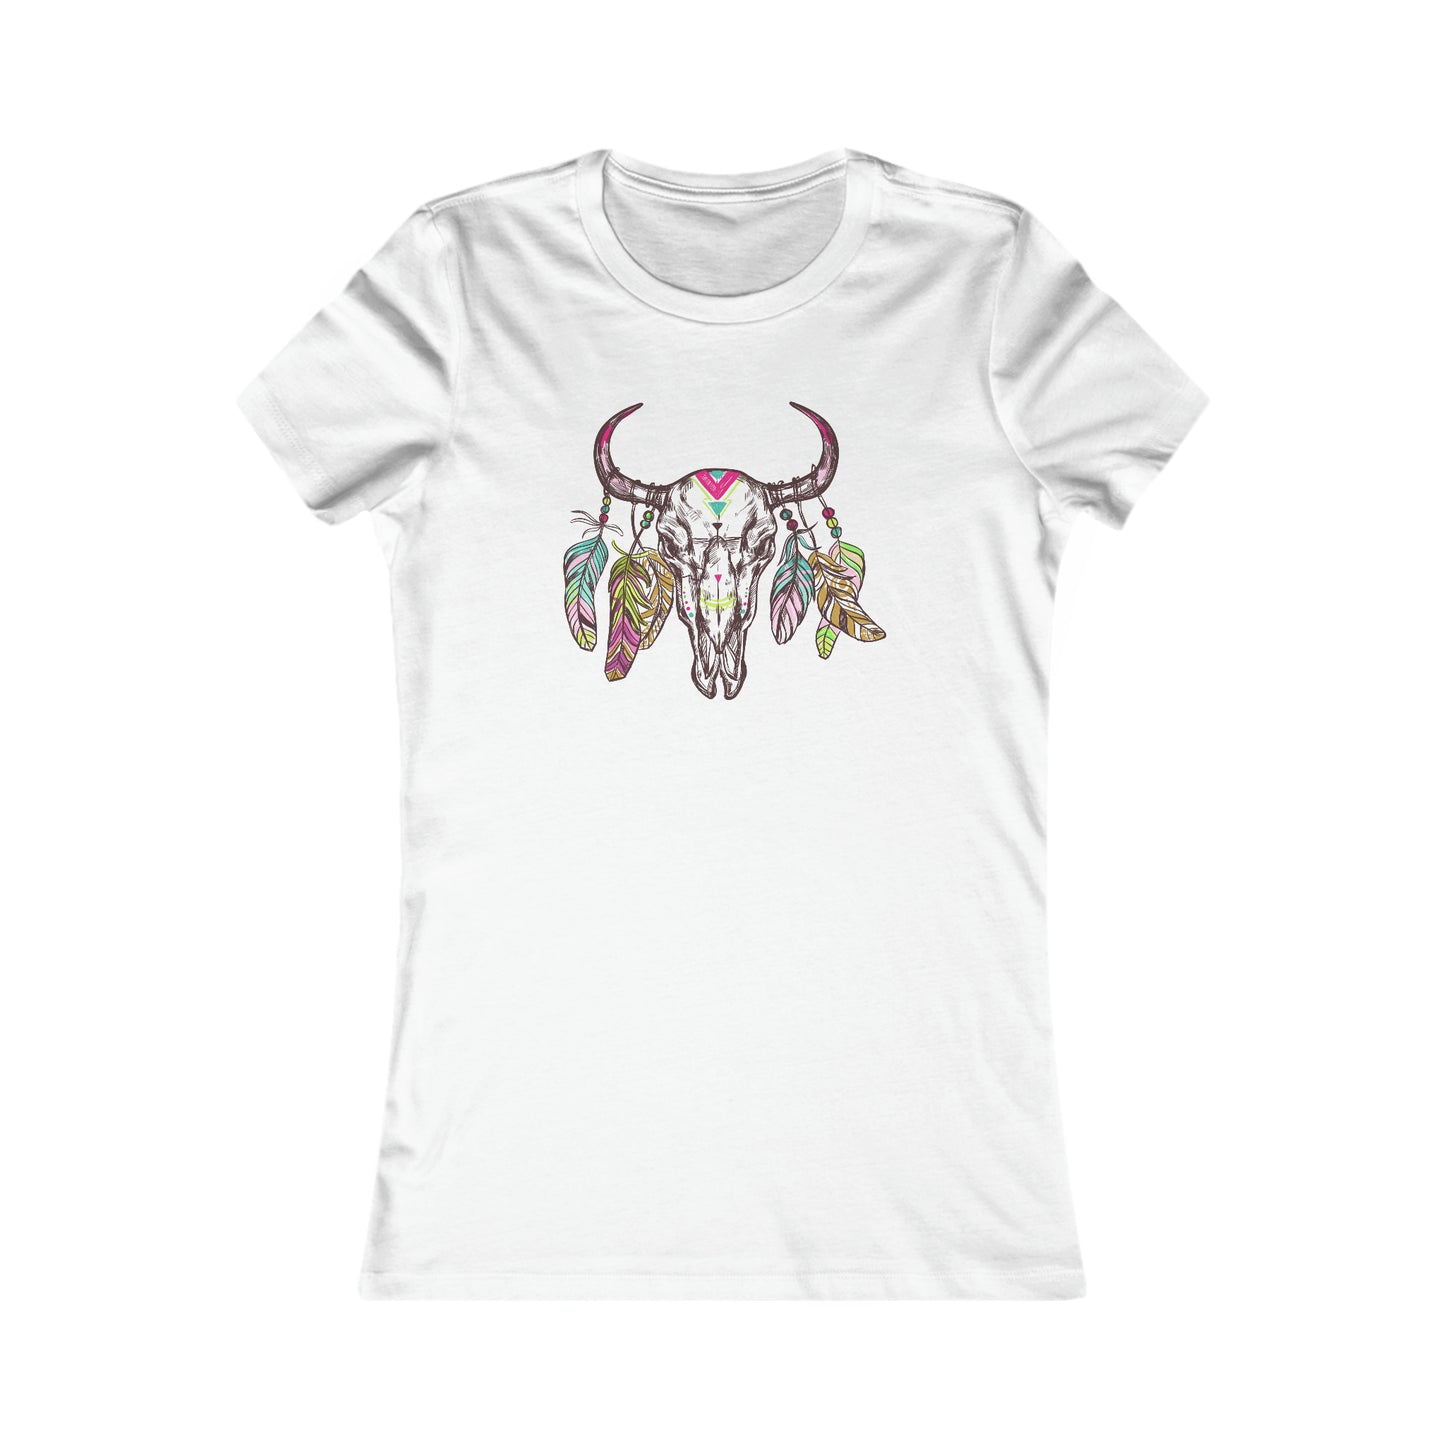 BOHO T-Shirt For Bohemian T Shirt For Steer TShirt For Skull Shirt For Woman Tee For Girl Gift